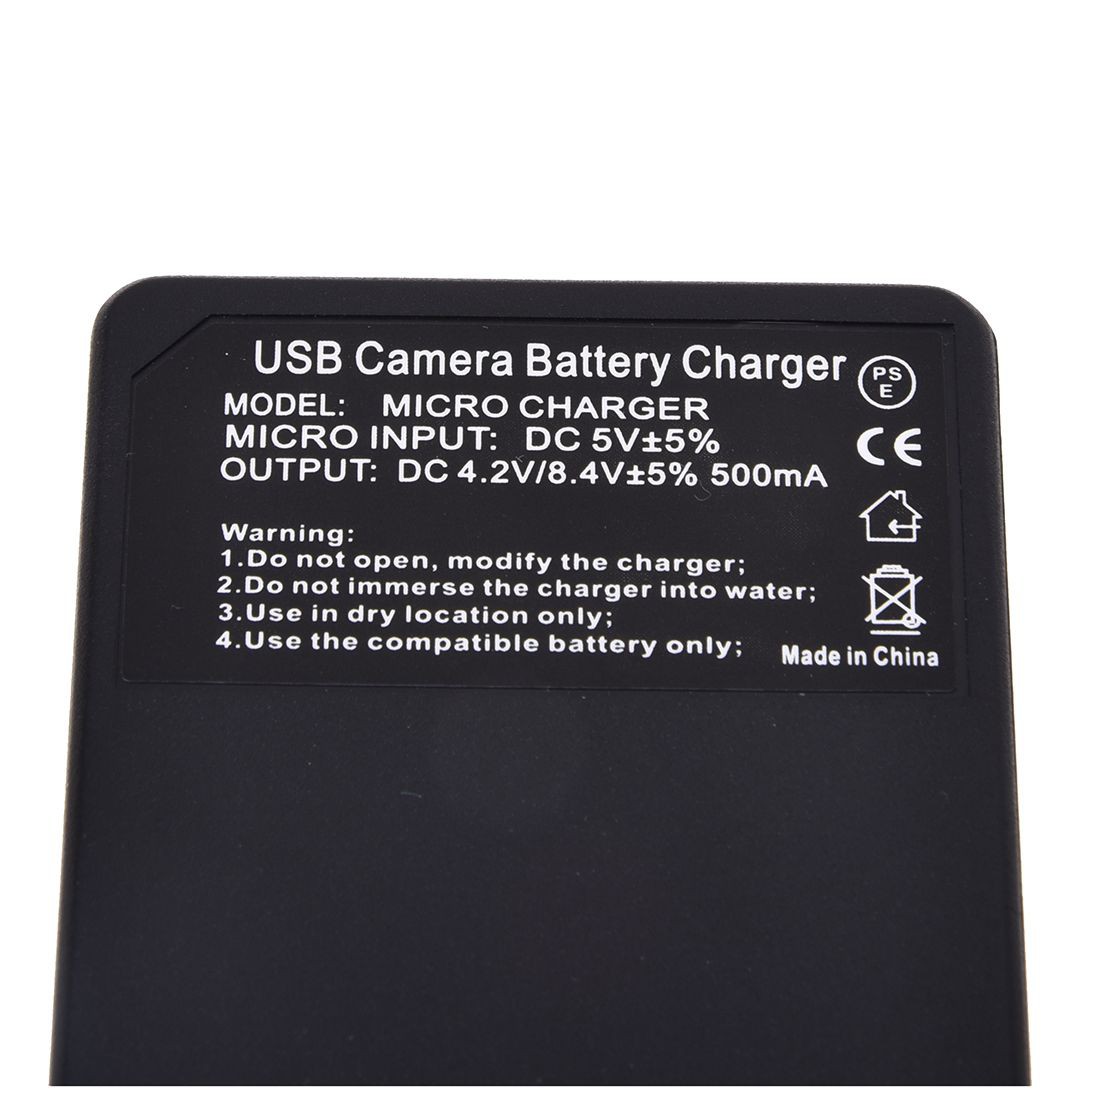 Battery USB Charger For Sony Cyber-shot DSC-H3 DSC-H7 DSC-H9 DSC-H10